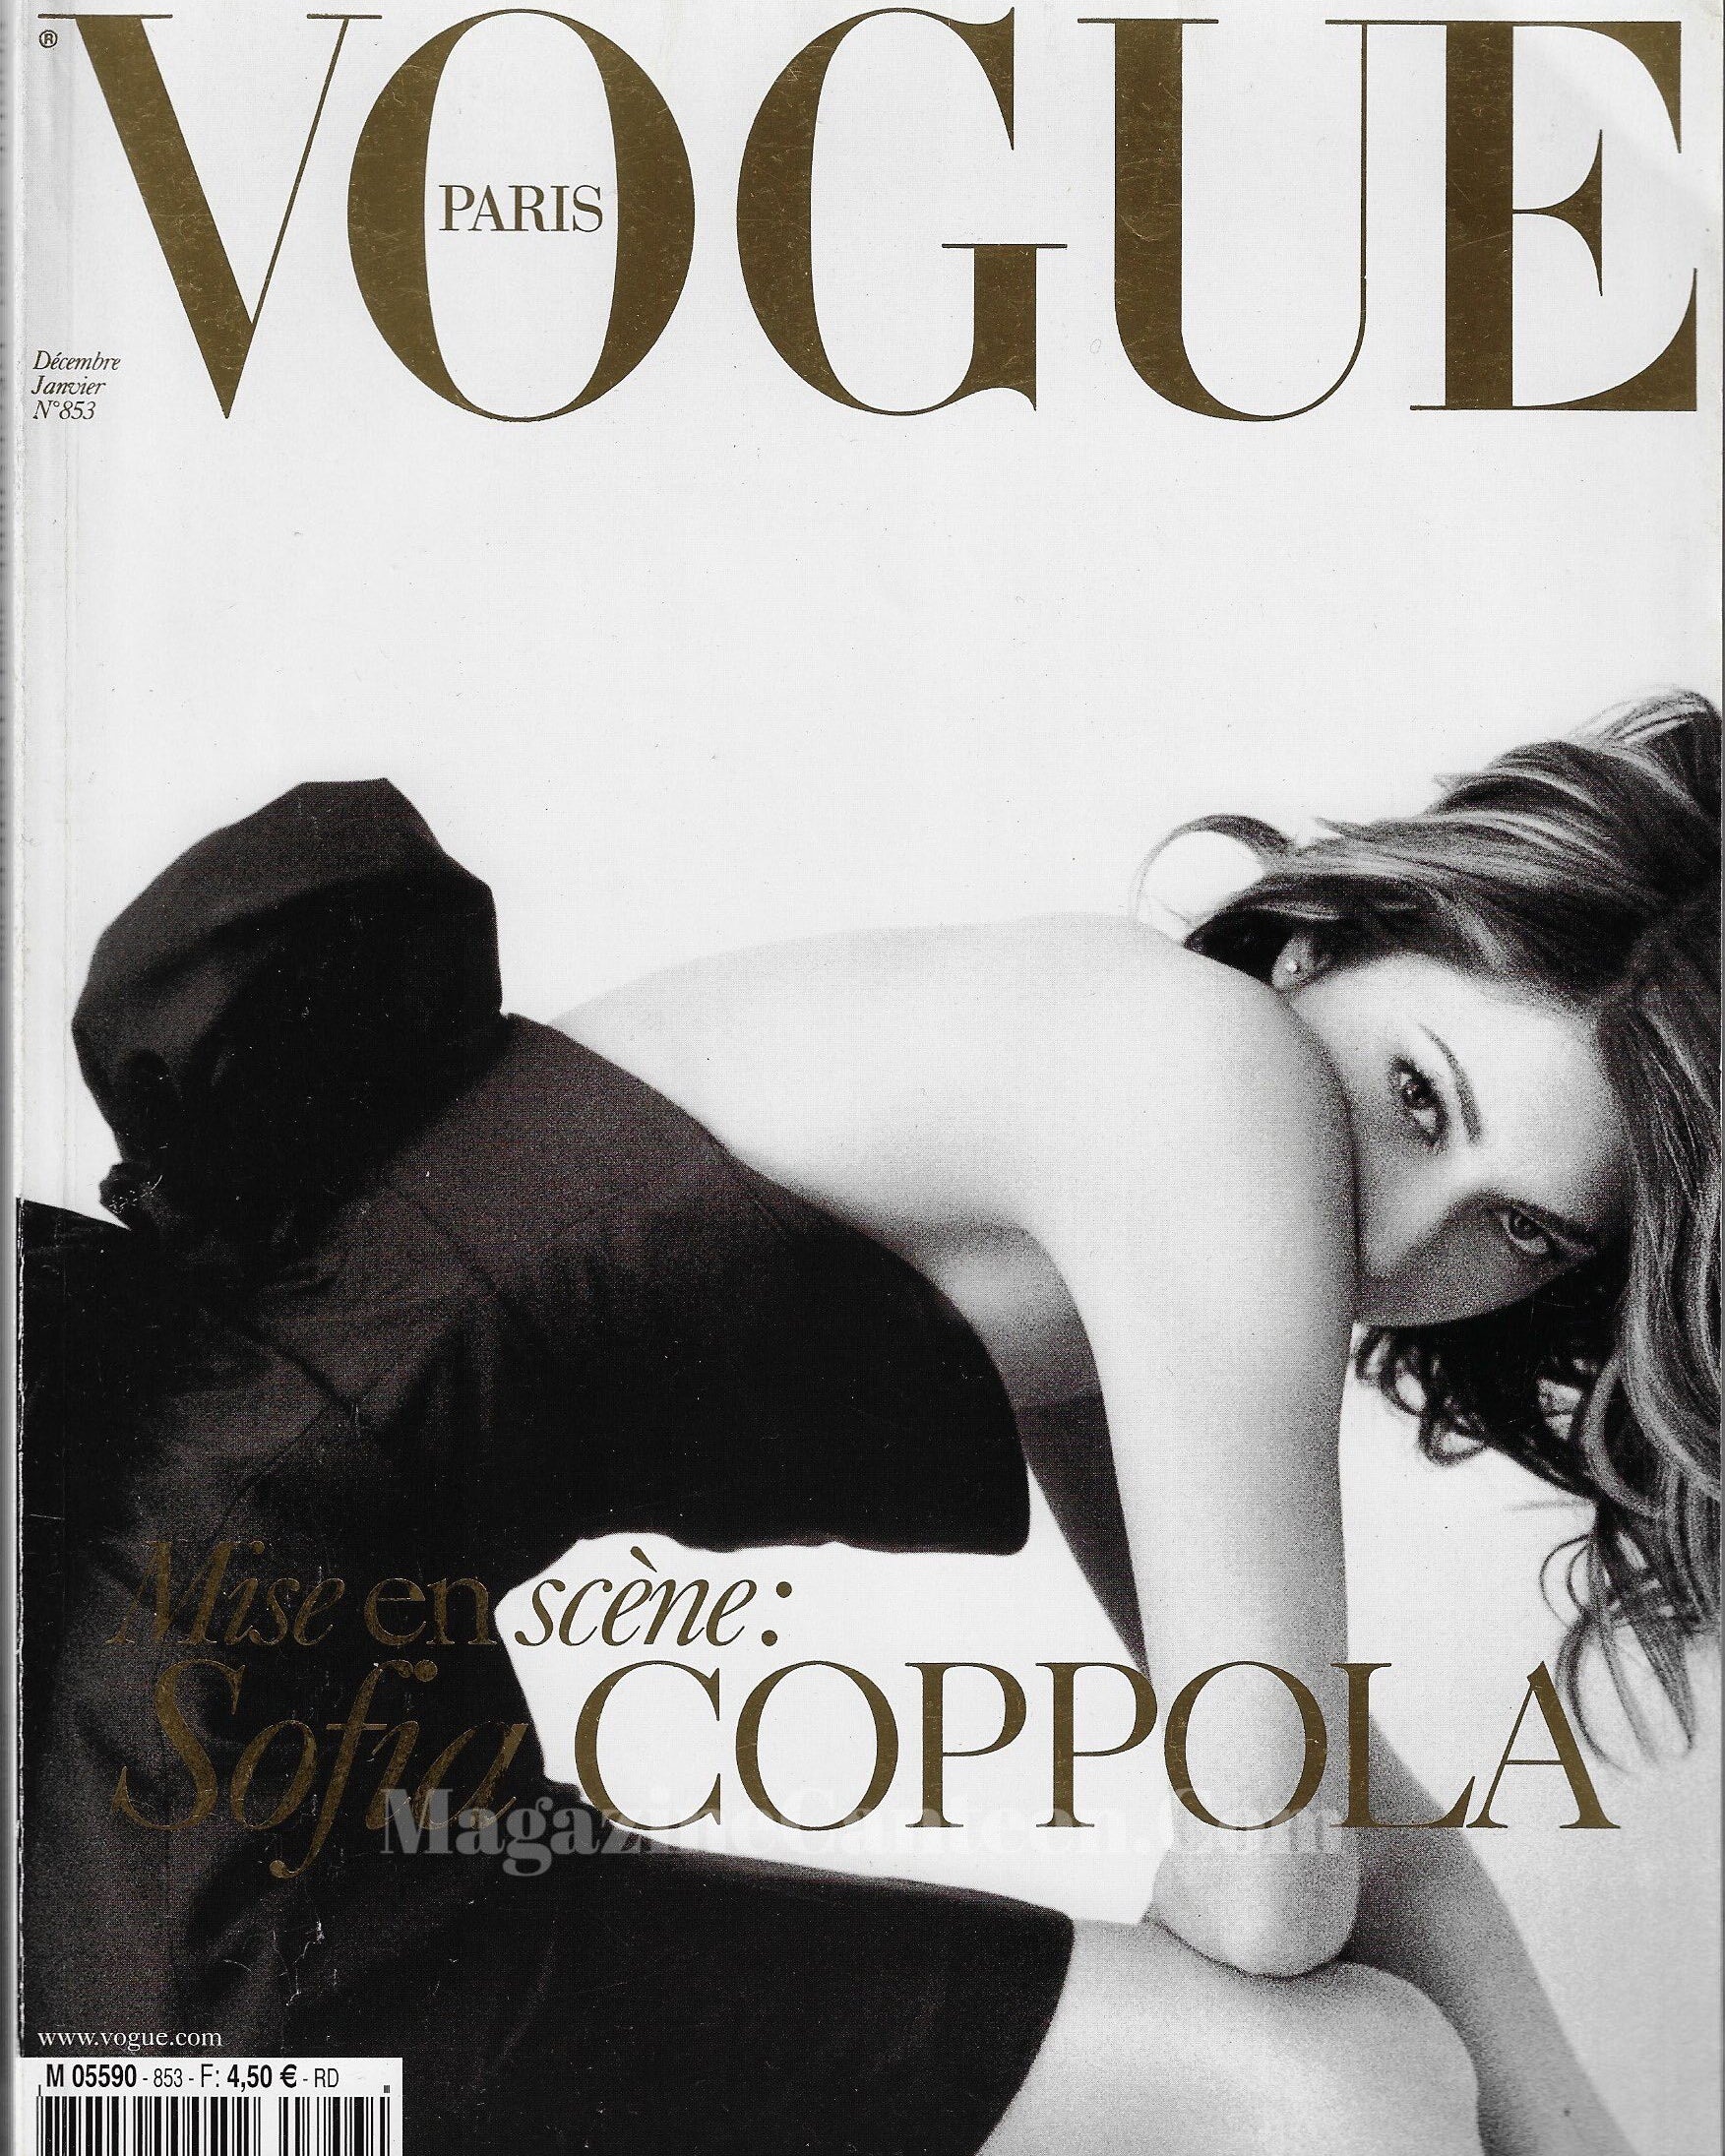 Vogue Paris Magazine 2004 - Sofia Coppola